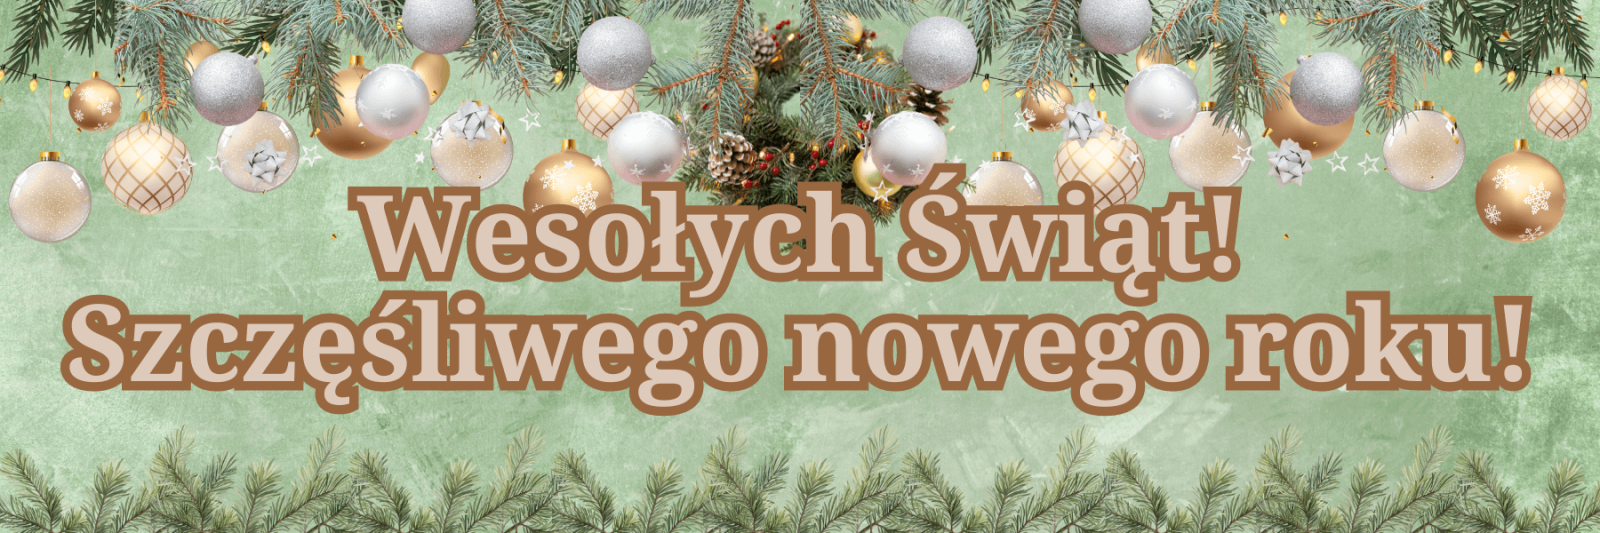 Веселого Рождества и счастливого Нового года! на польском